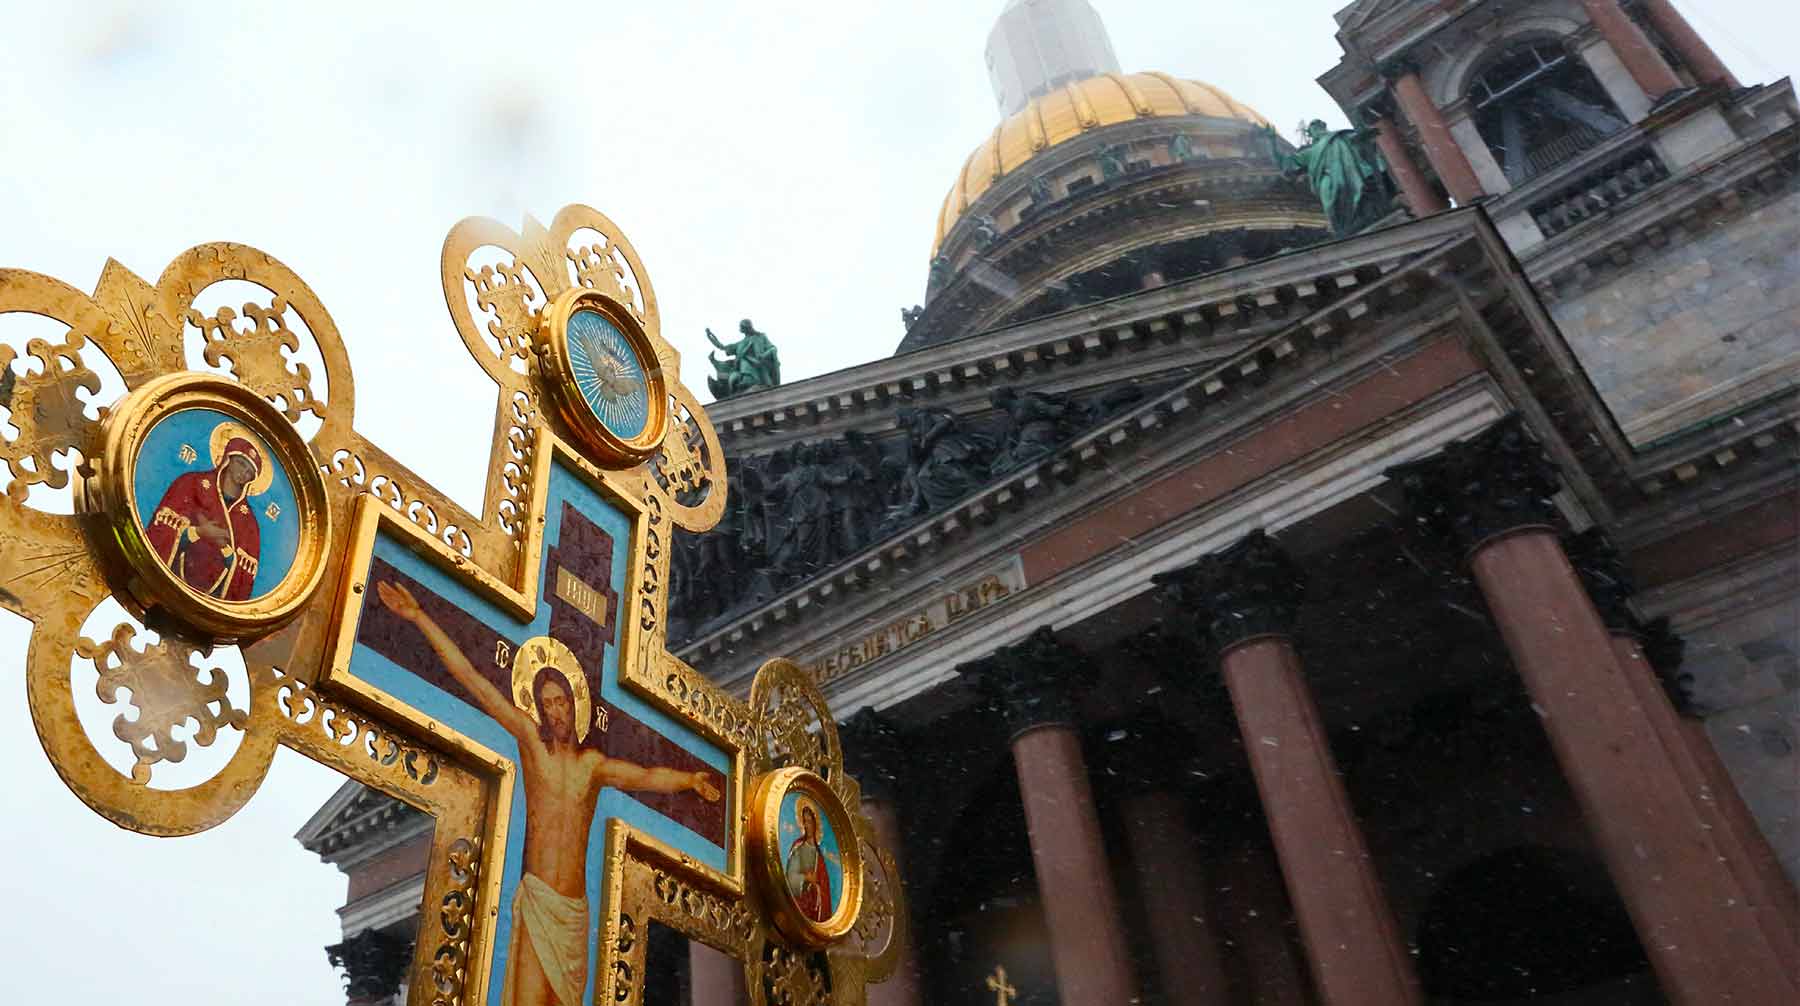 Ранее РБК сообщил, что власти Санкт-Петербурга отказались передавать РПЦ собор из-за недовольства горожан undefined